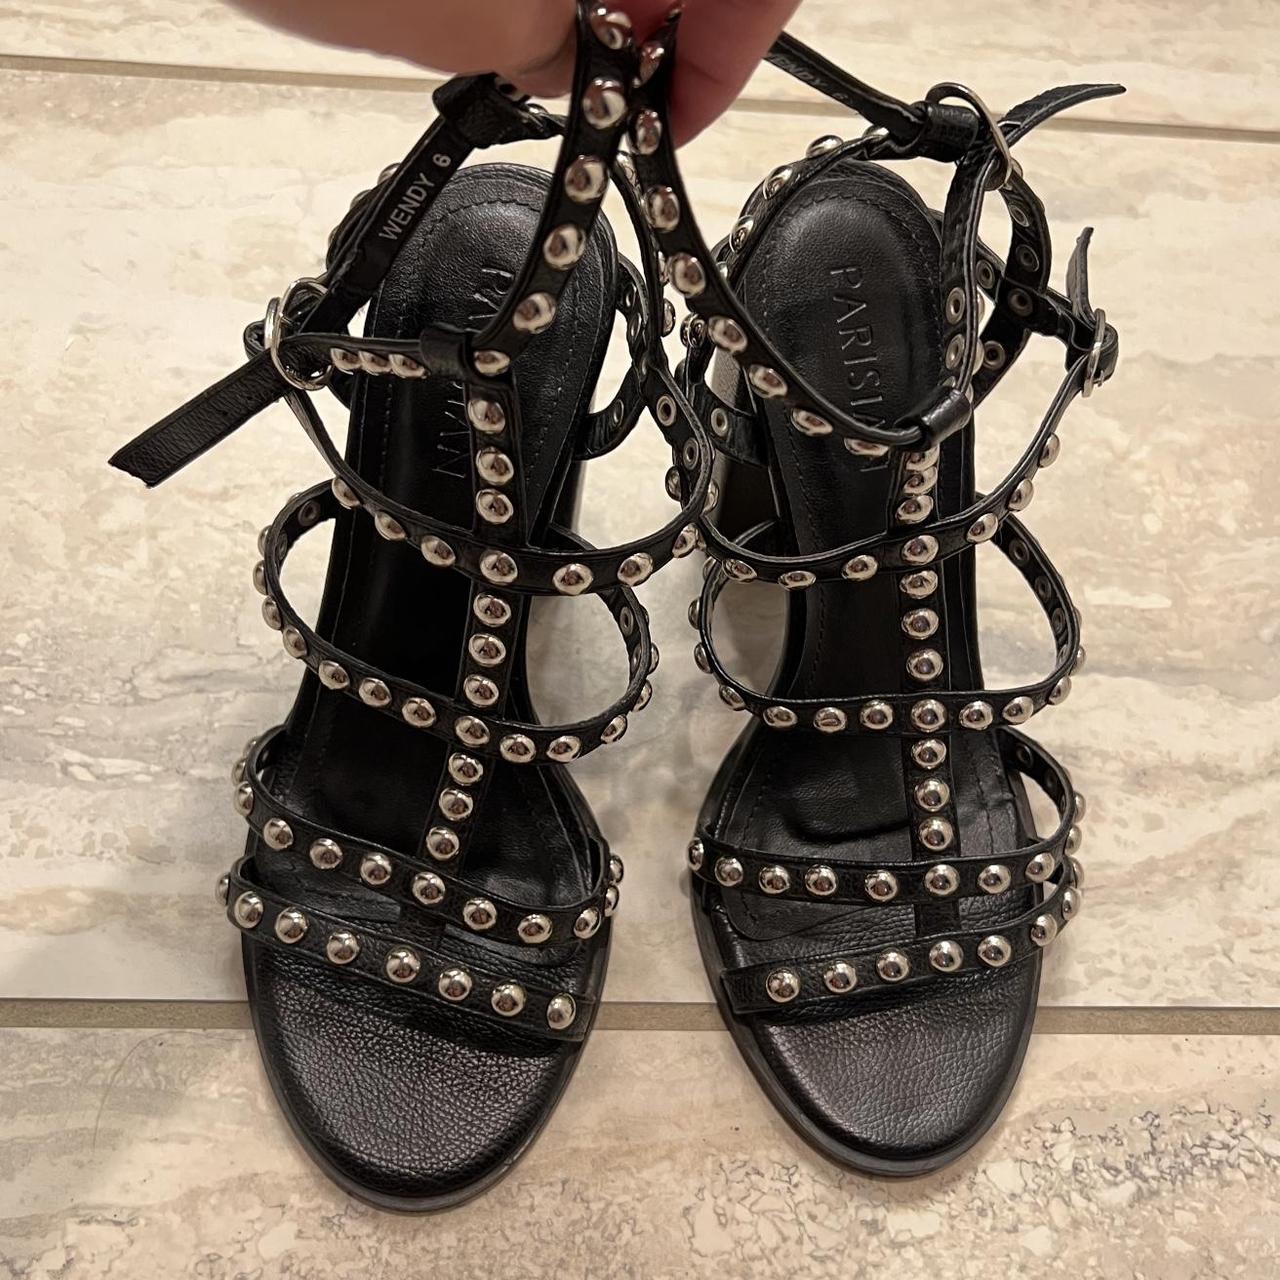 PARISIAN Rock Stud Sandals (Black) - Size 6 - Depop